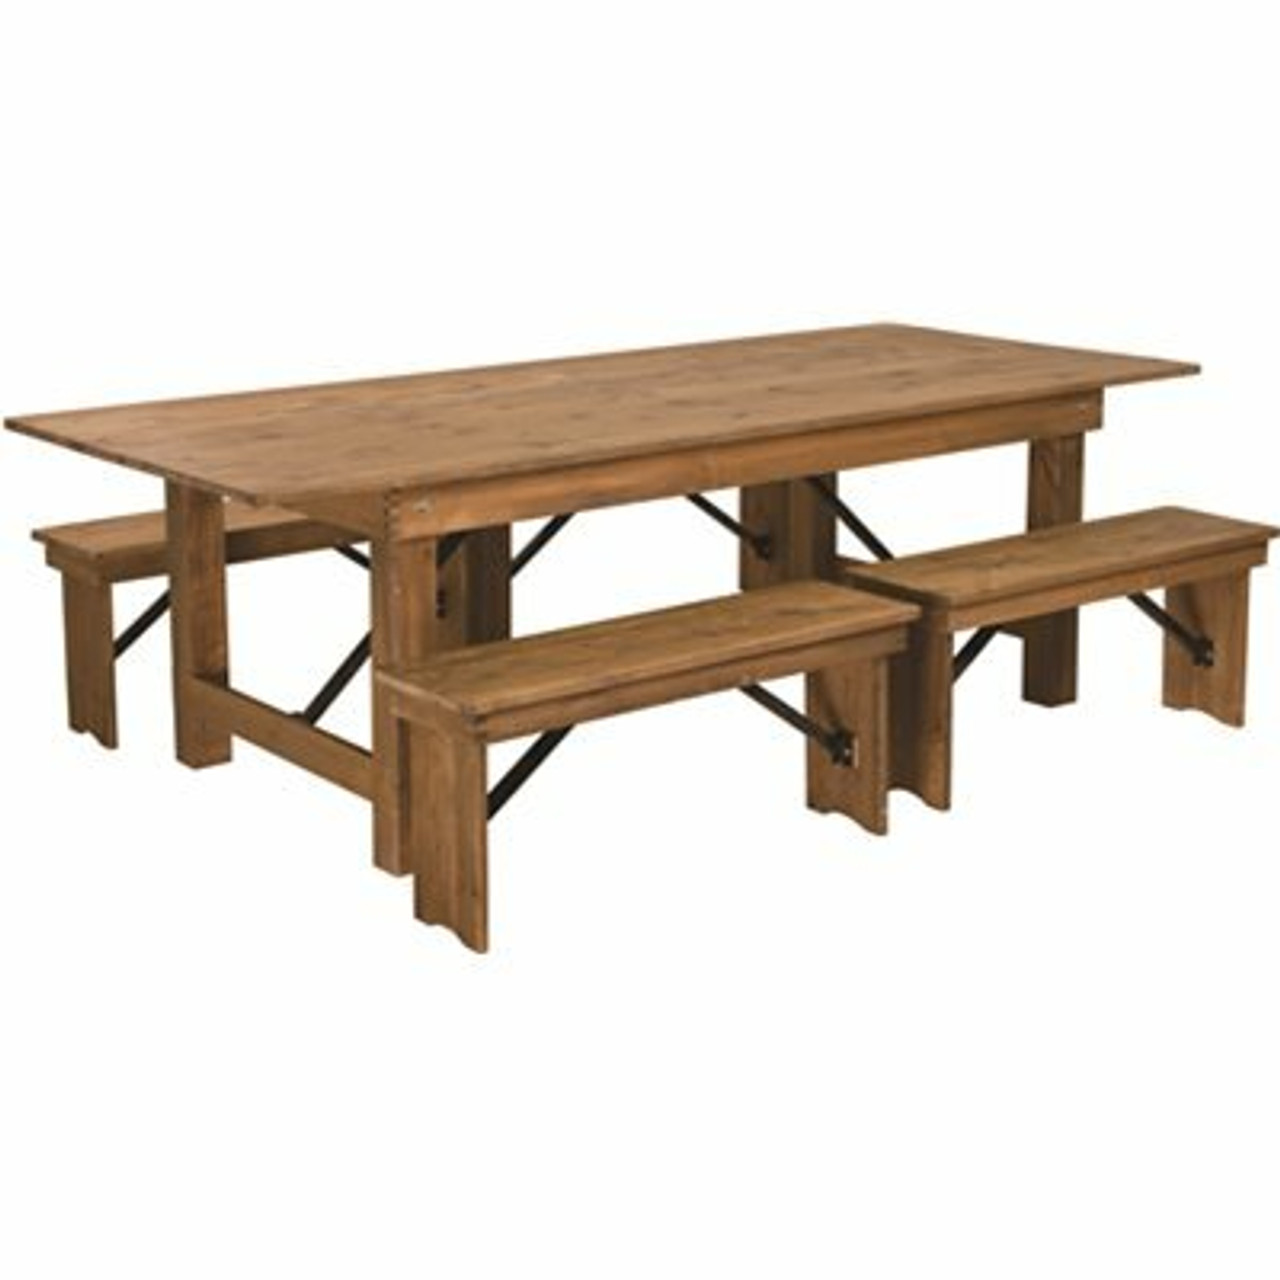 Carnegy Avenue 5-Piece Antique Rustic Farm Table Set - 311524268